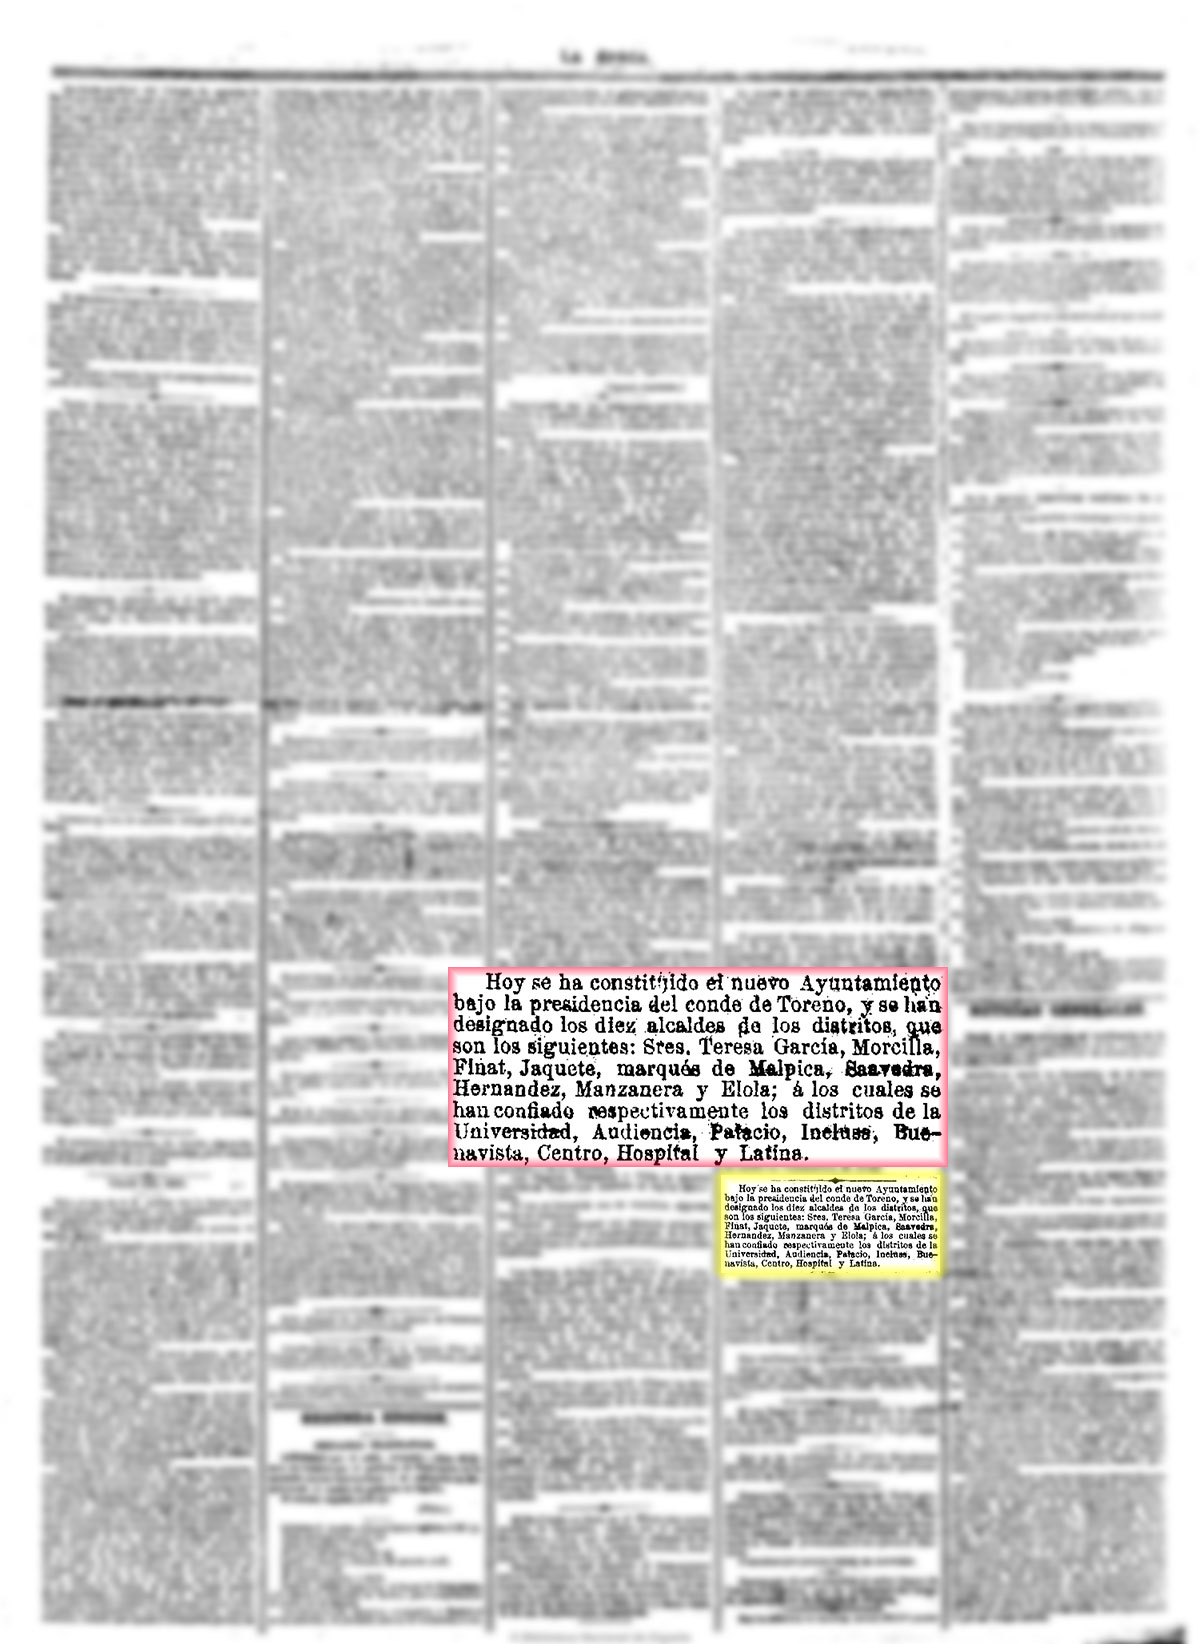 La Época, 8/1/1875, n.º 8.115, página 3, nombramiento del equipo de gobierno del Ayuntamiento de Madrid